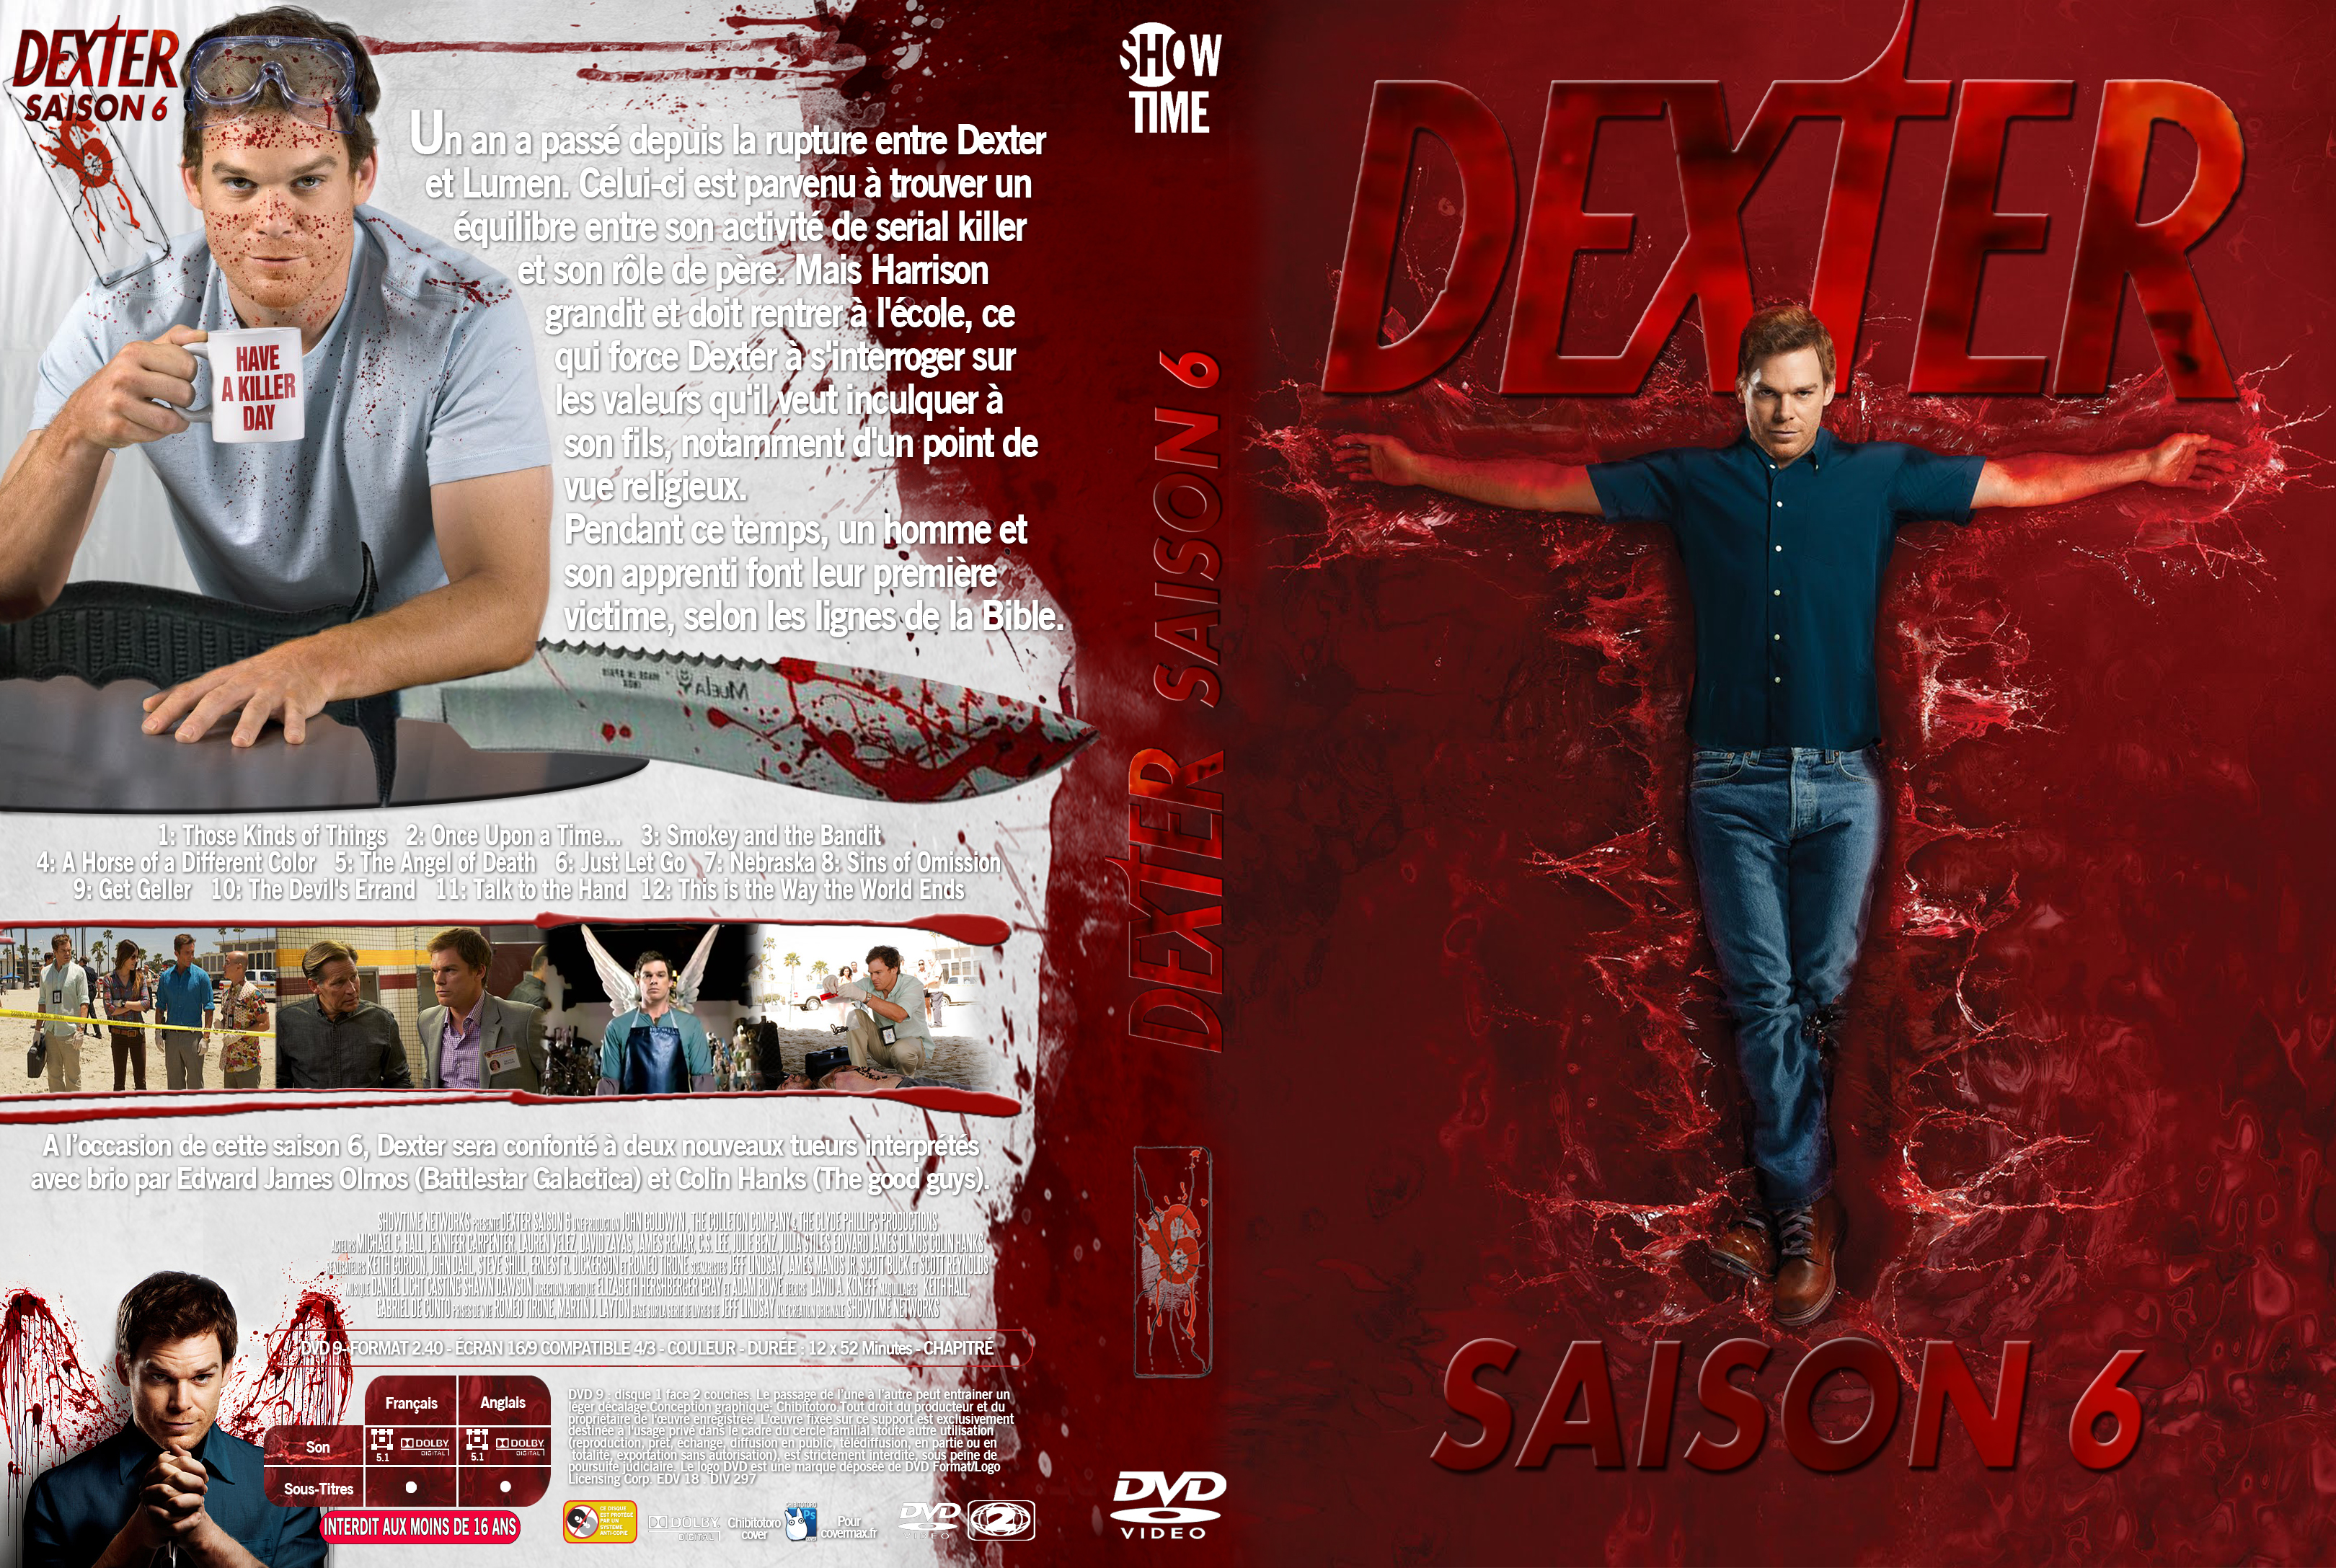 Jaquette DVD Dexter saison 6 custom